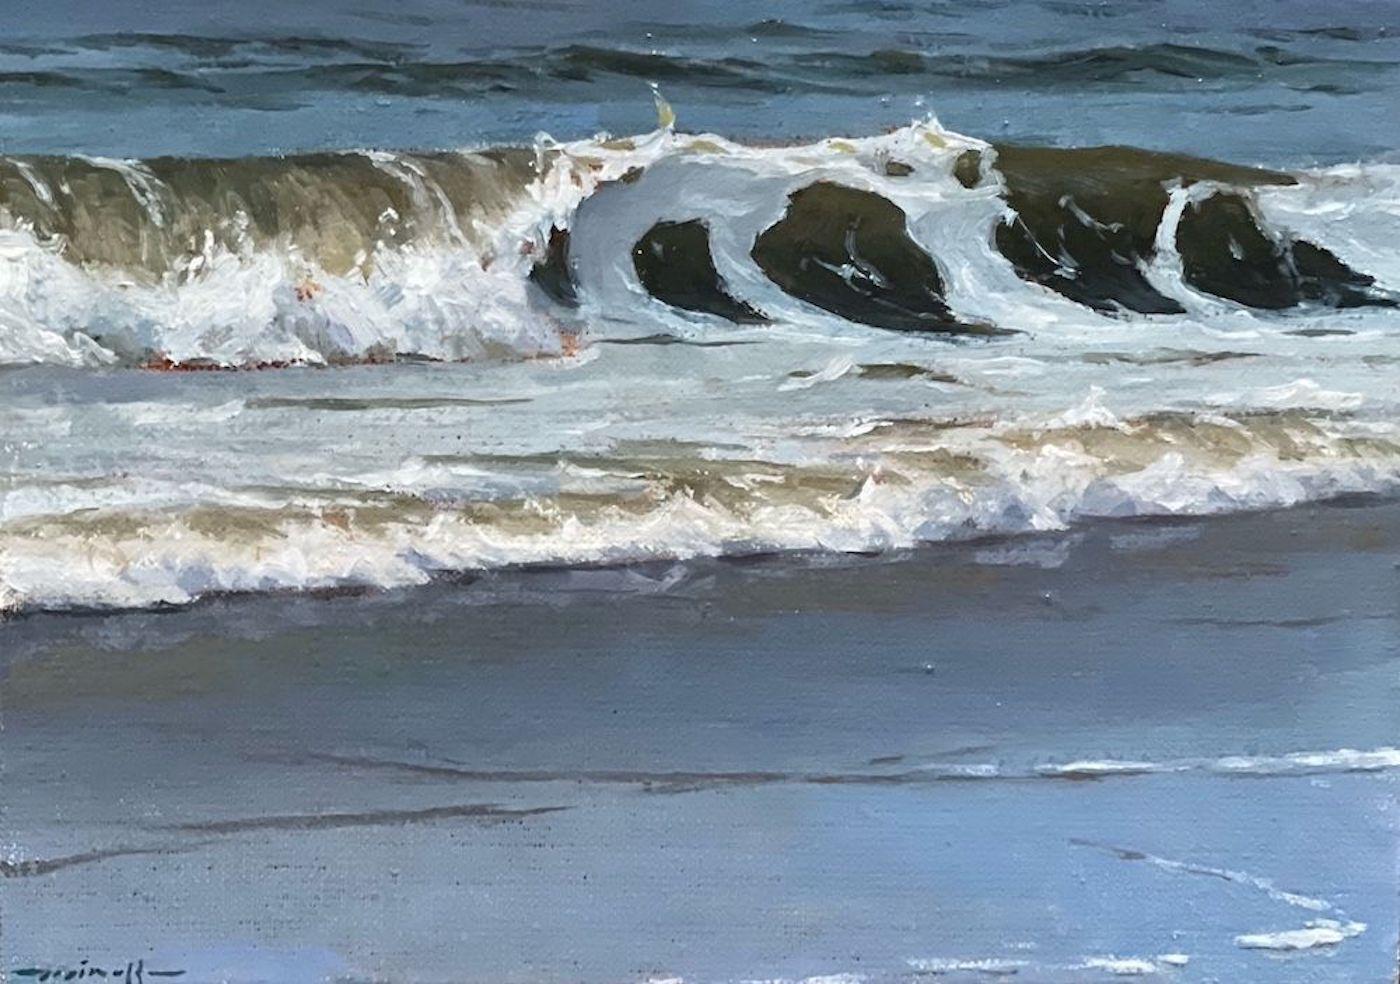 "Crisp No. 2" kleines zeitgenössisches hyperrealistisches Ölgemälde des Ozeans am Strand